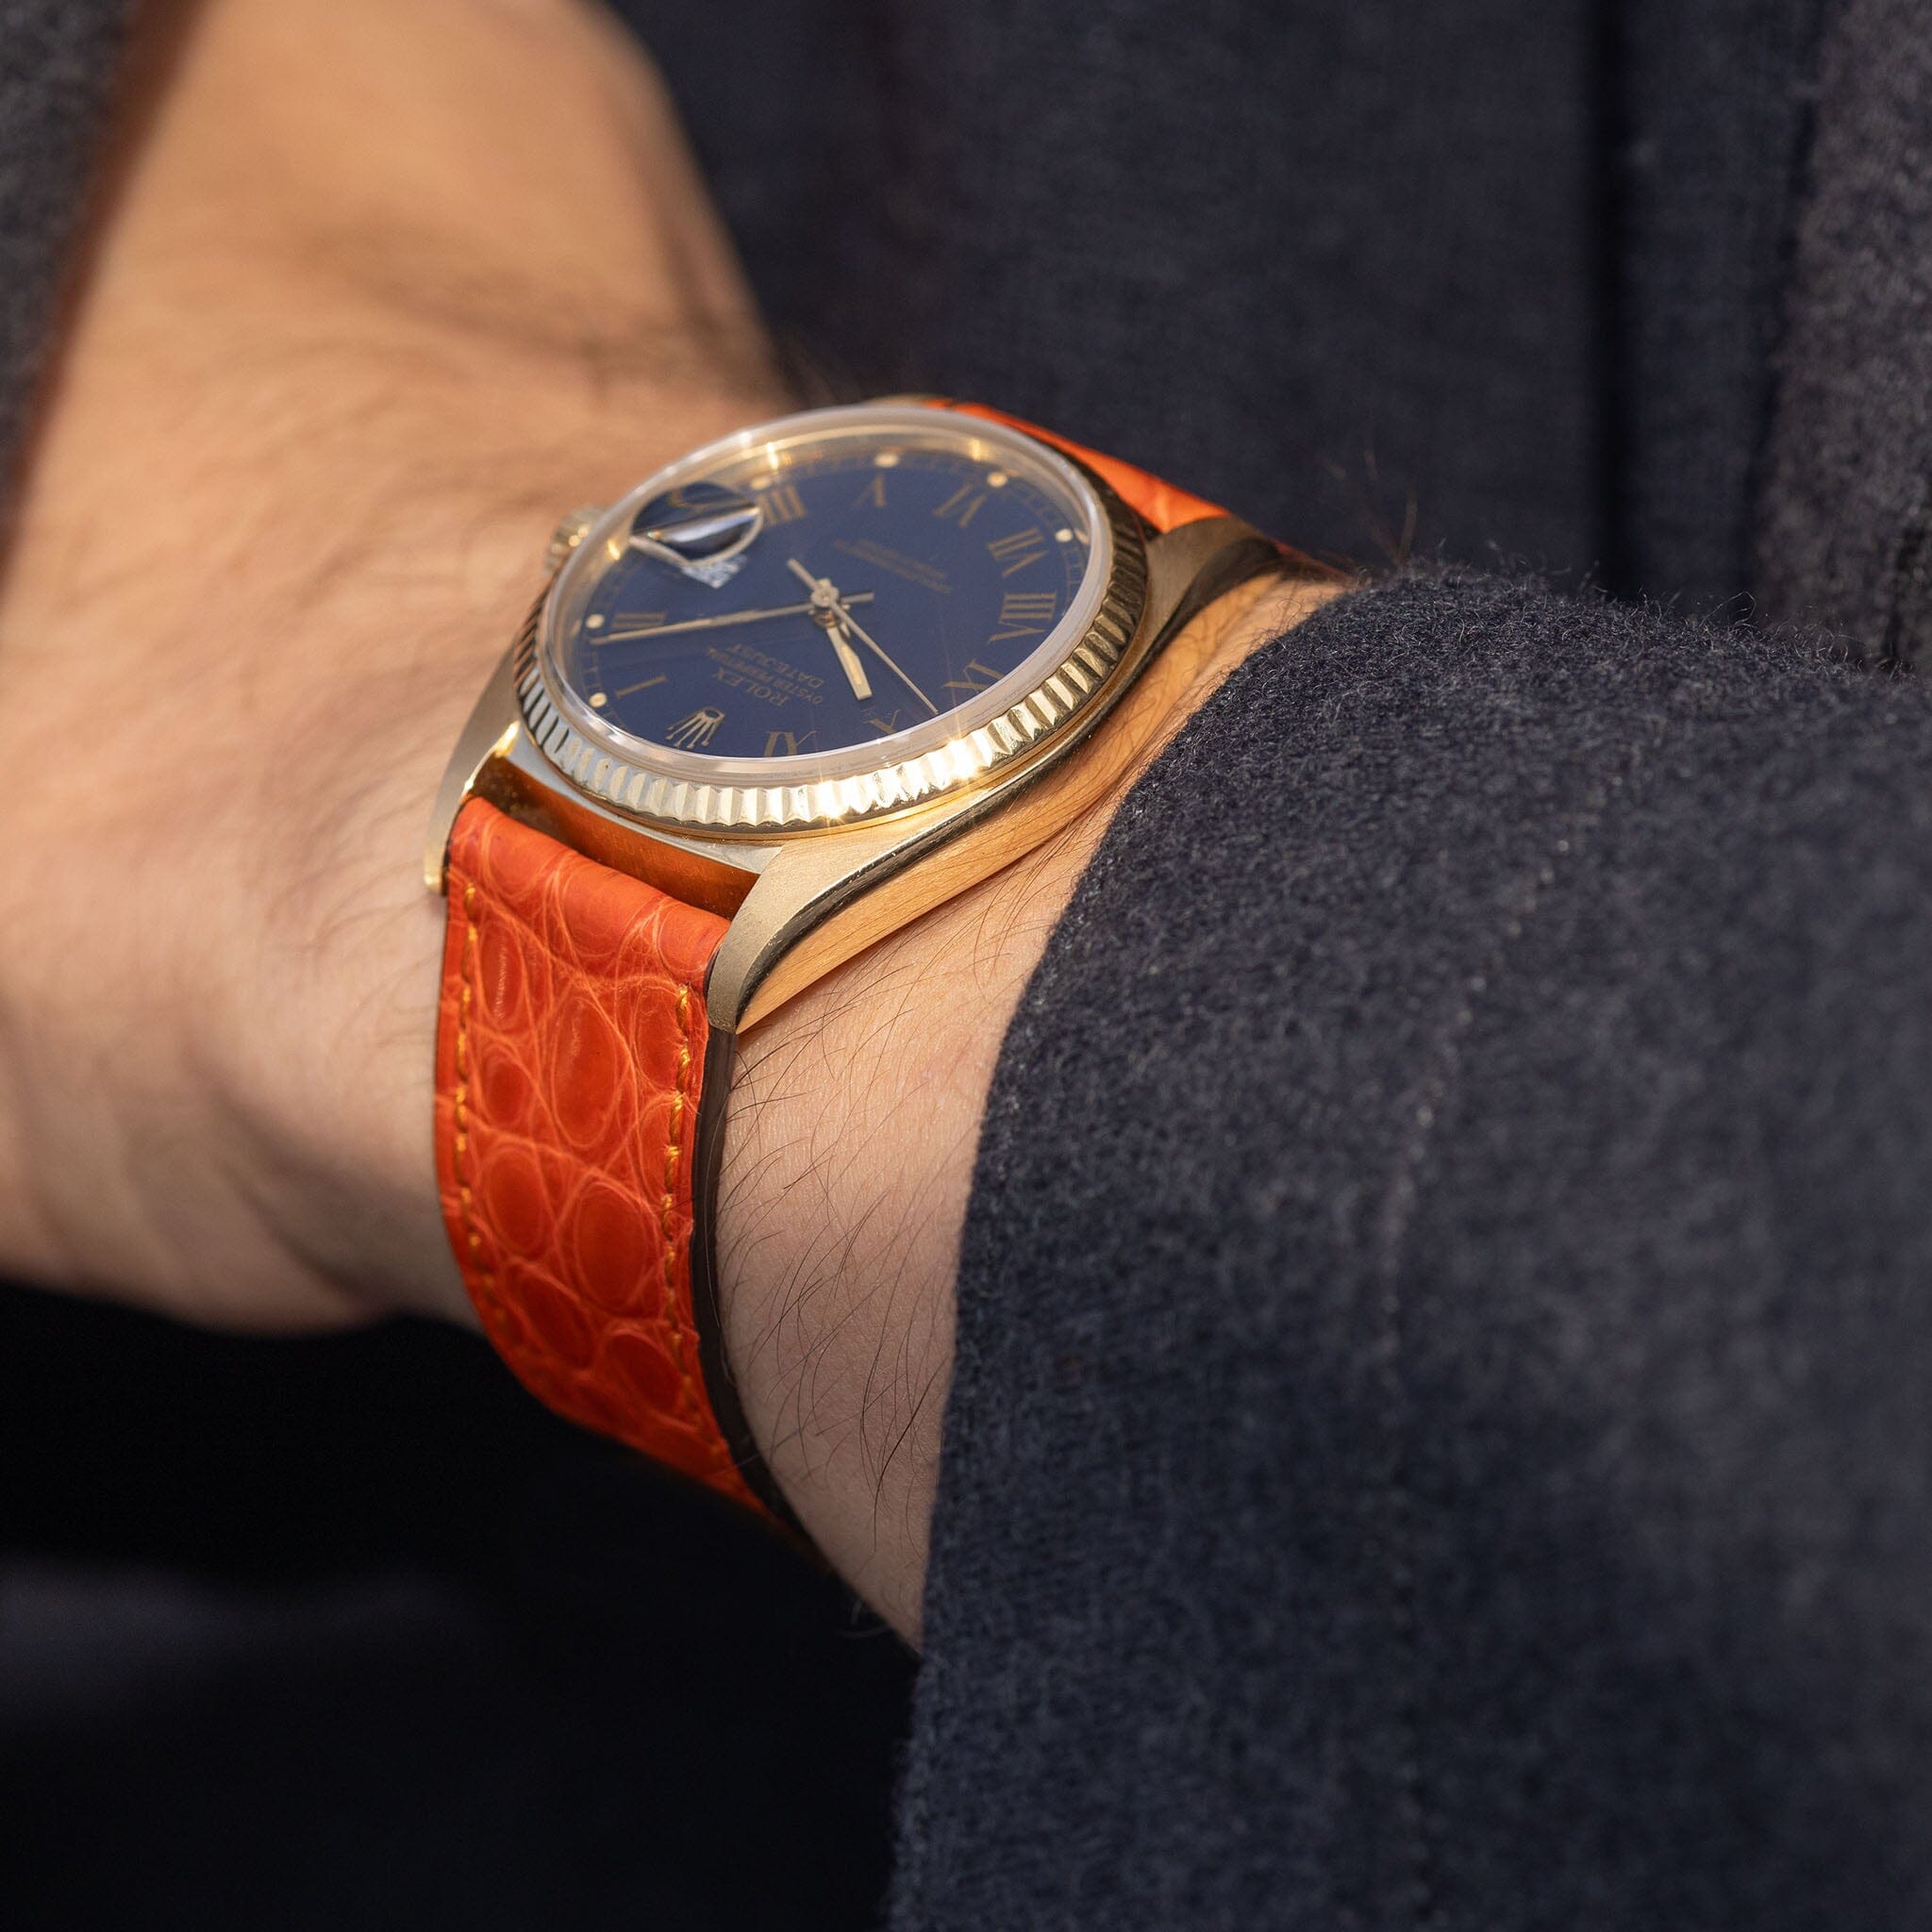 Rolex Datejust 16018 Buckley with orange Alligator Leather Watch Strap